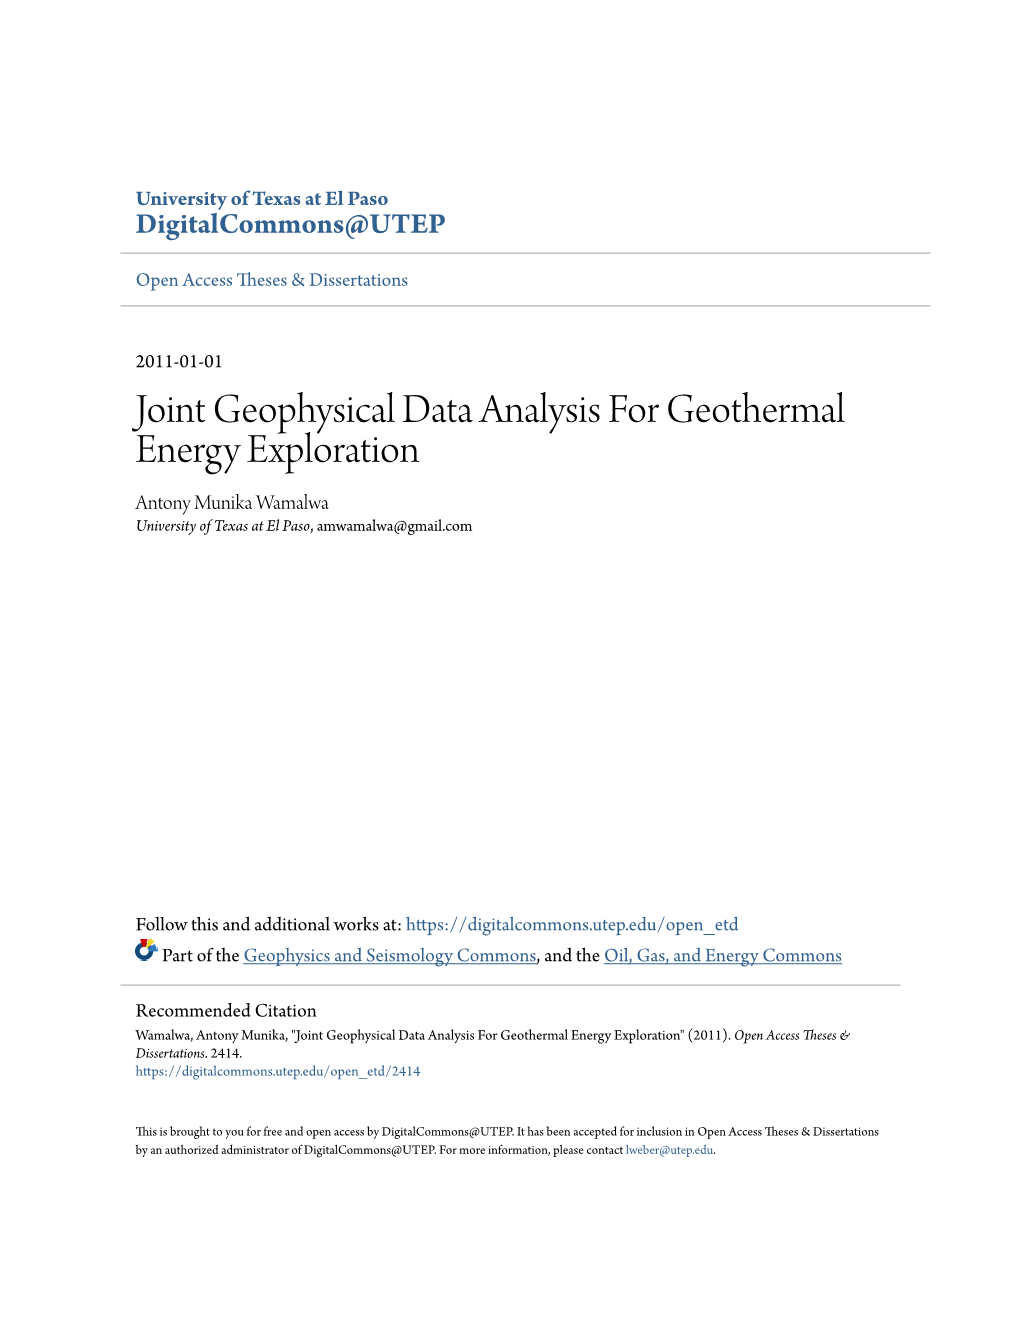 Joint Geophysical Data Analysis for Geothermal Energy Exploration Antony Munika Wamalwa University of Texas at El Paso, Amwamalwa@Gmail.Com